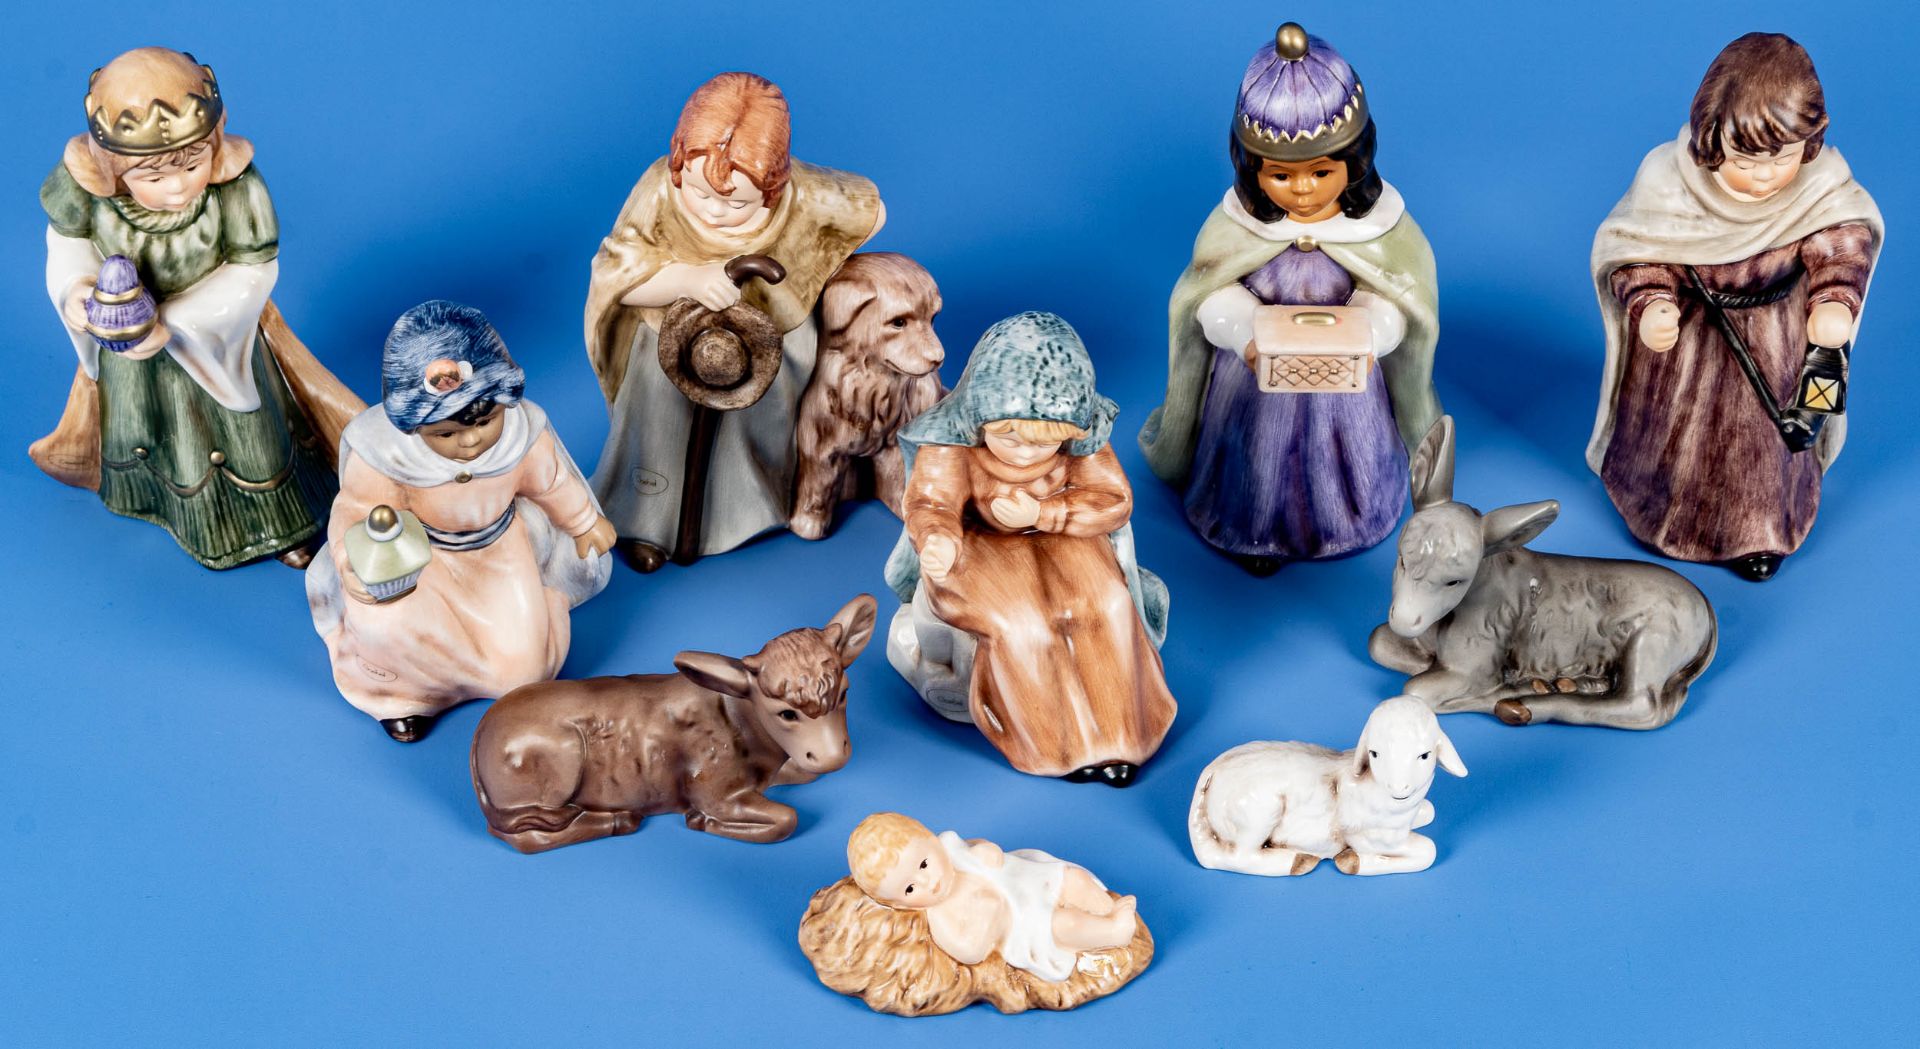 10teiliges Set weihnachtlicher Krippenfiguren, Goebel-Porzellan, versch. farbig staffiertes Porzell - Image 3 of 4